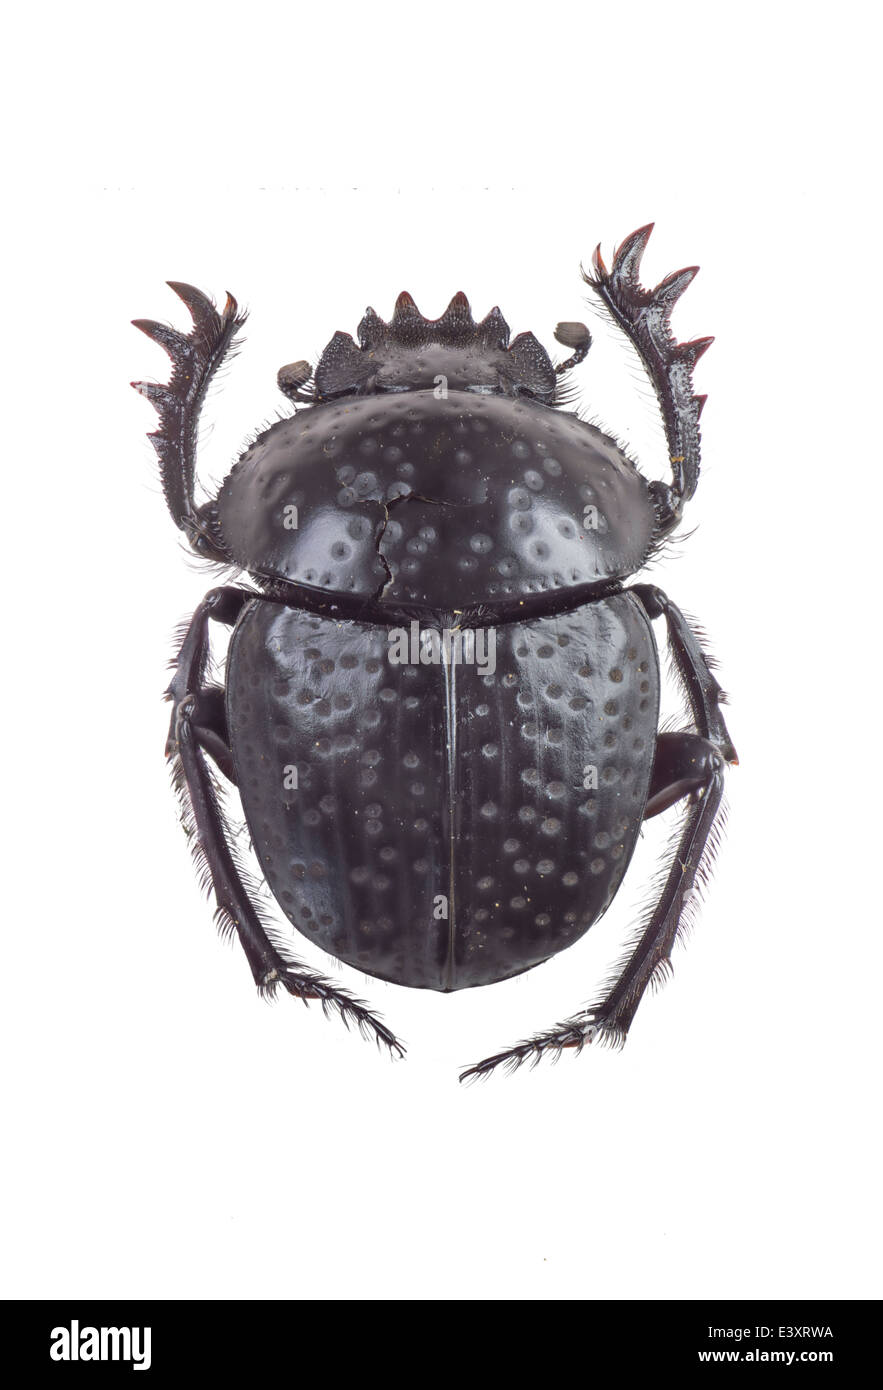 Coleoptera; Scarabaeidae; Scarabaeus variolosus; Fabricius 1787; Stock Photo